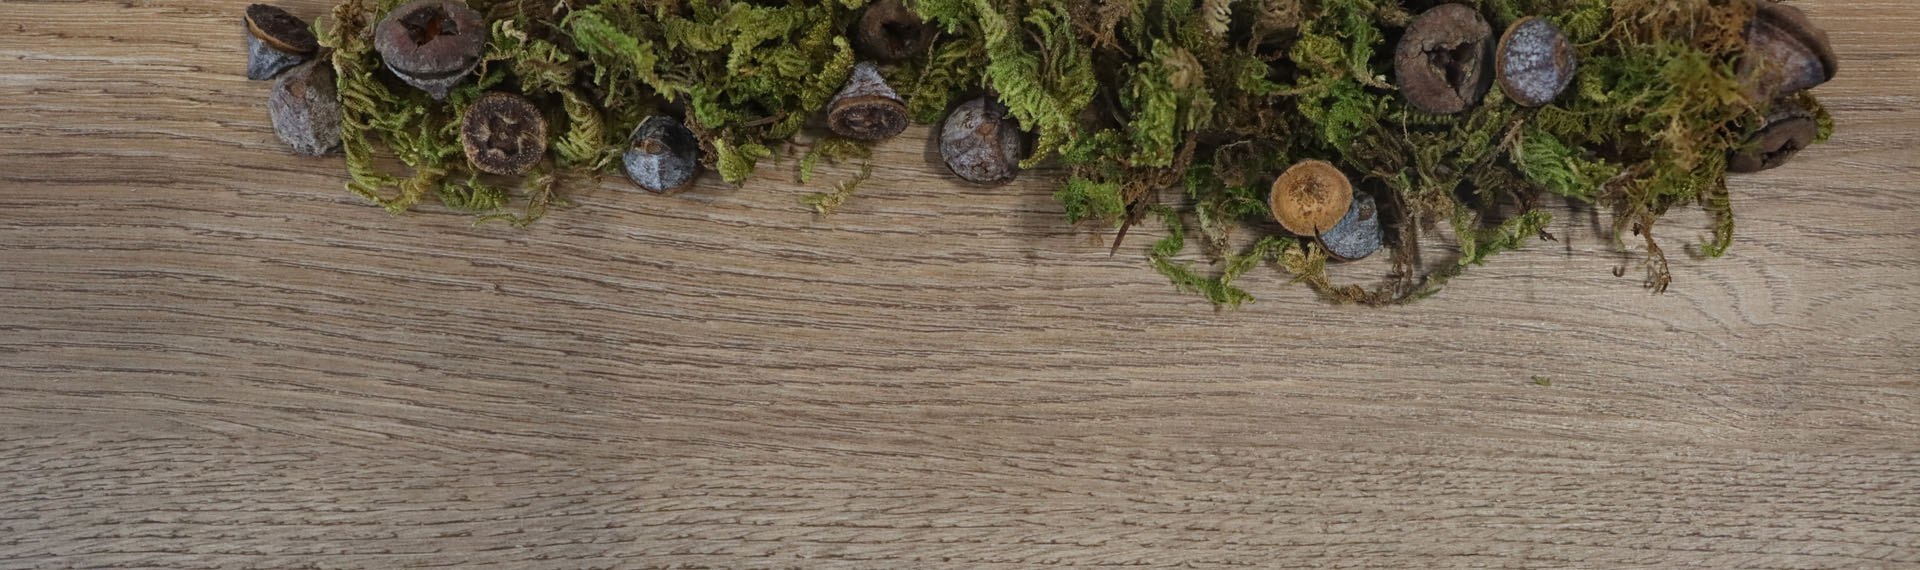 Piso vinilico lvt tipo madera con decorados naturales